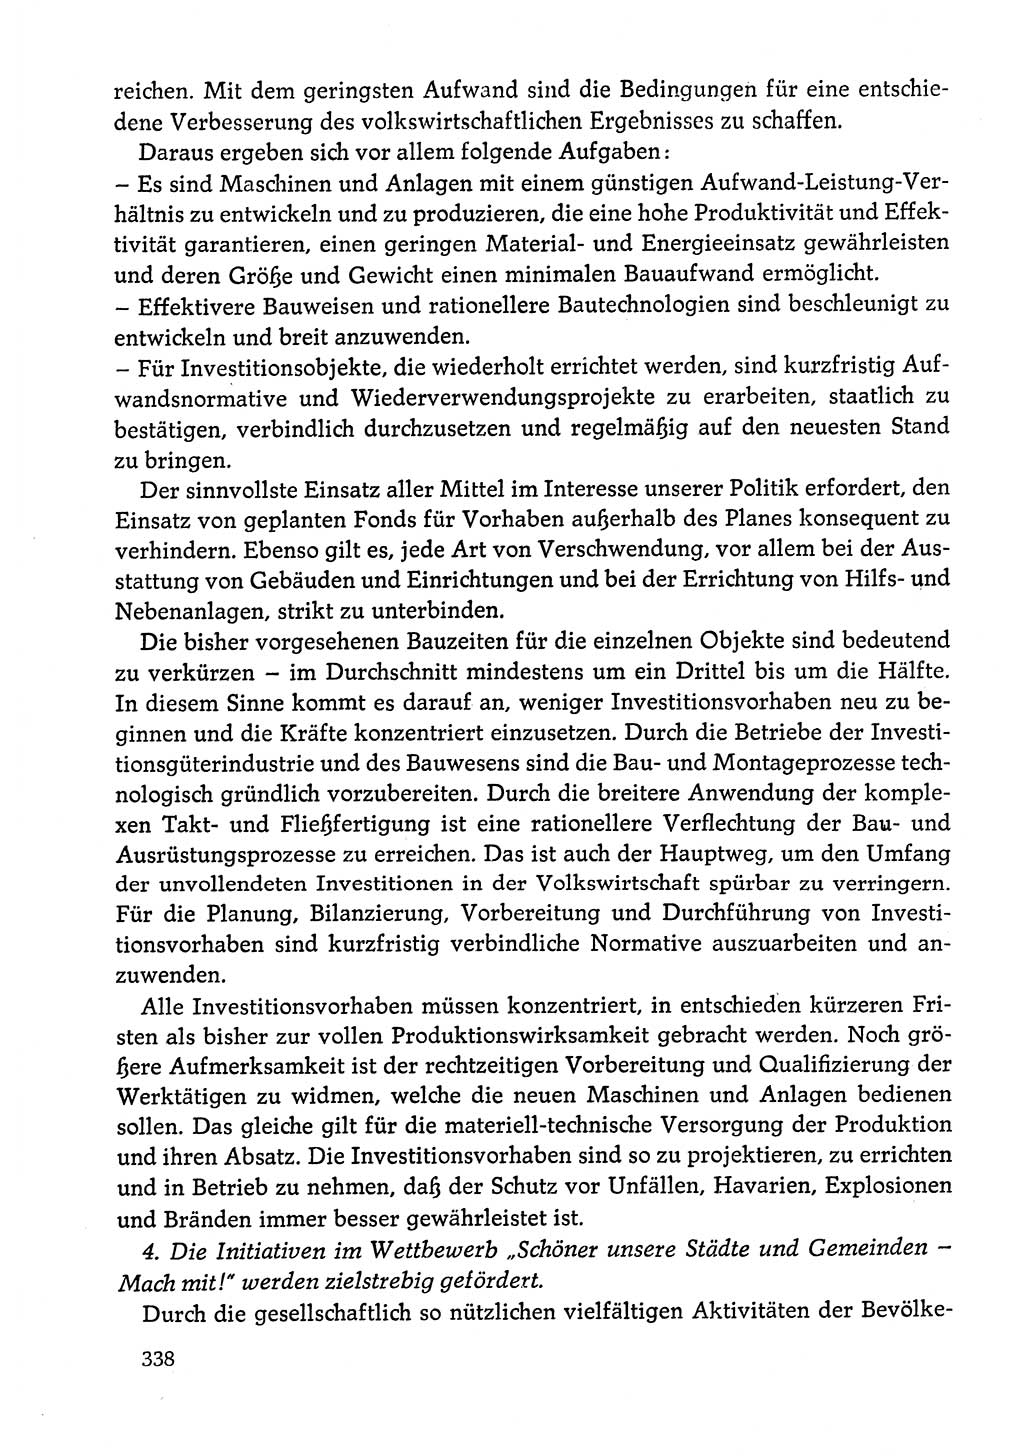 Dokumente der Sozialistischen Einheitspartei Deutschlands (SED) [Deutsche Demokratische Republik (DDR)] 1978-1979, Seite 338 (Dok. SED DDR 1978-1979, S. 338)